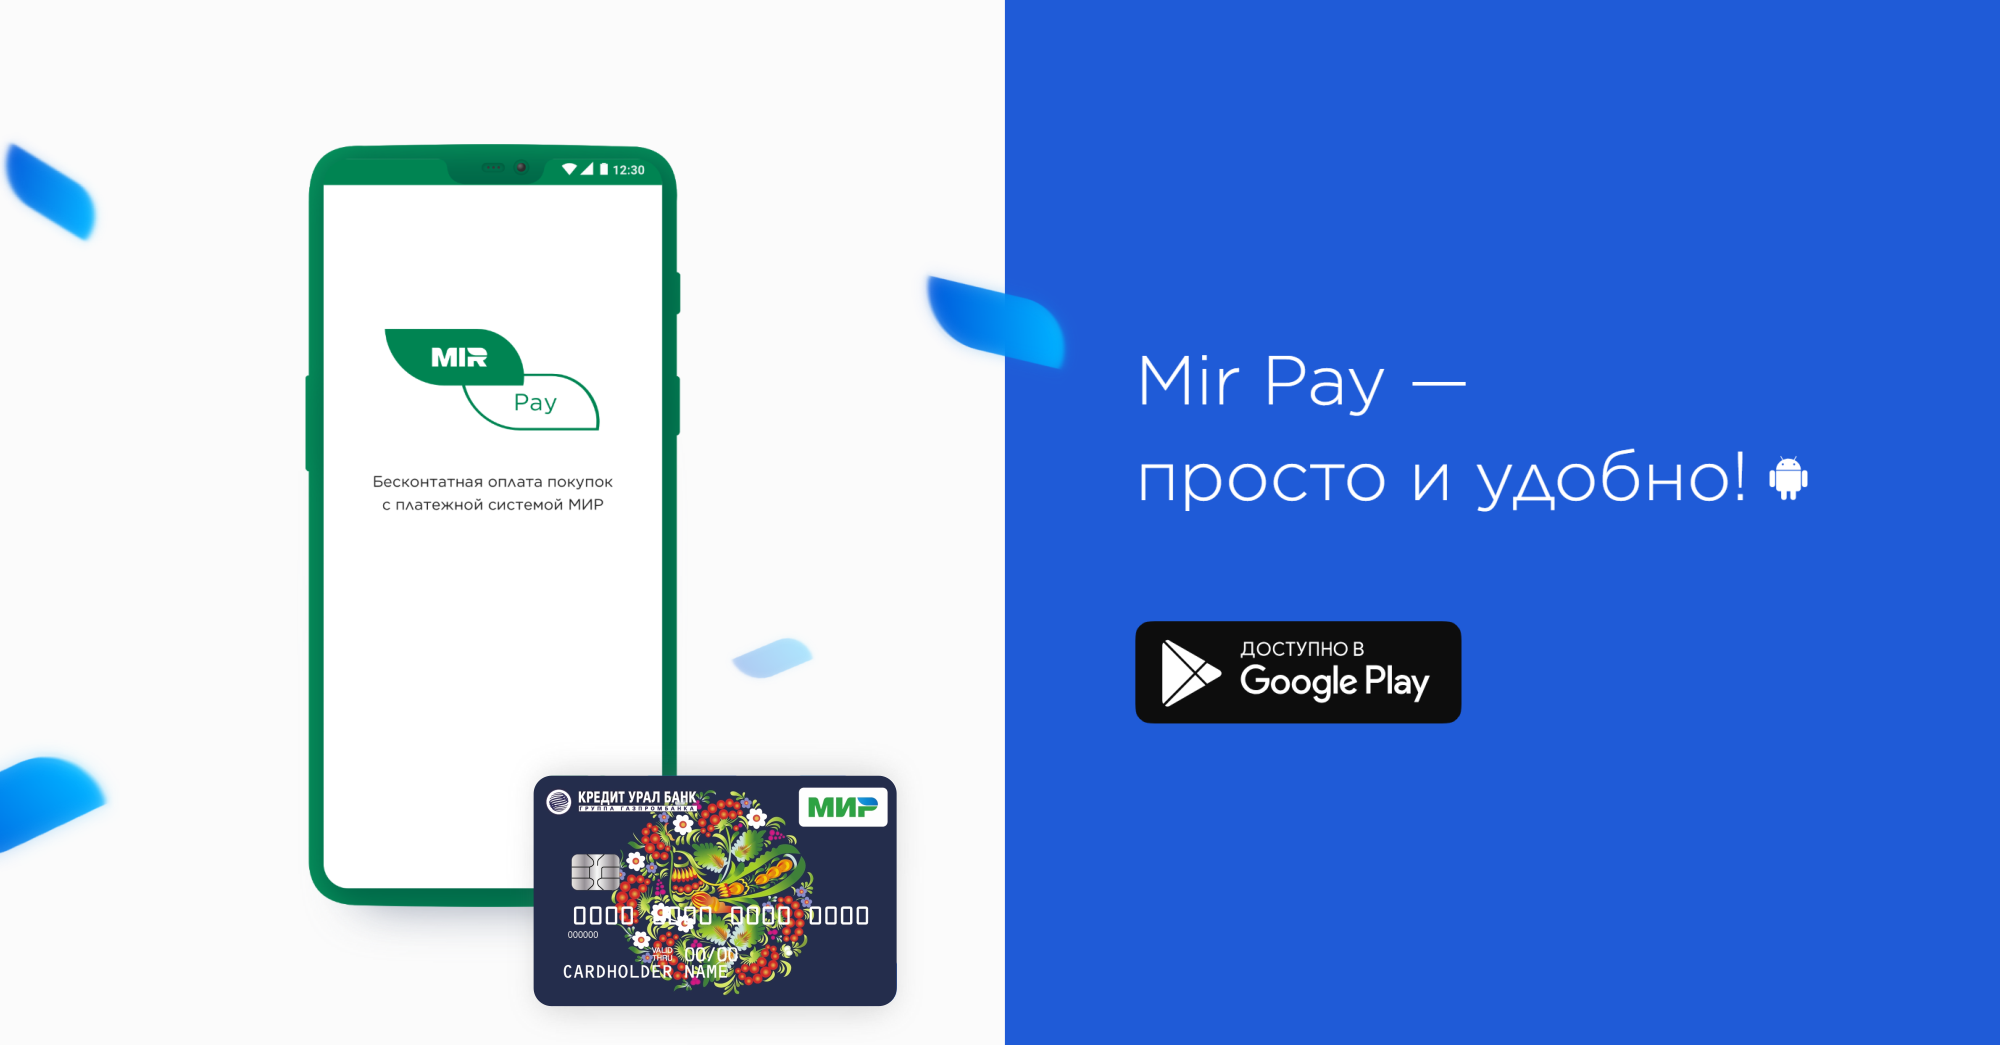 Сервис Мir Pay для клиентов Кредит Урал Банка!